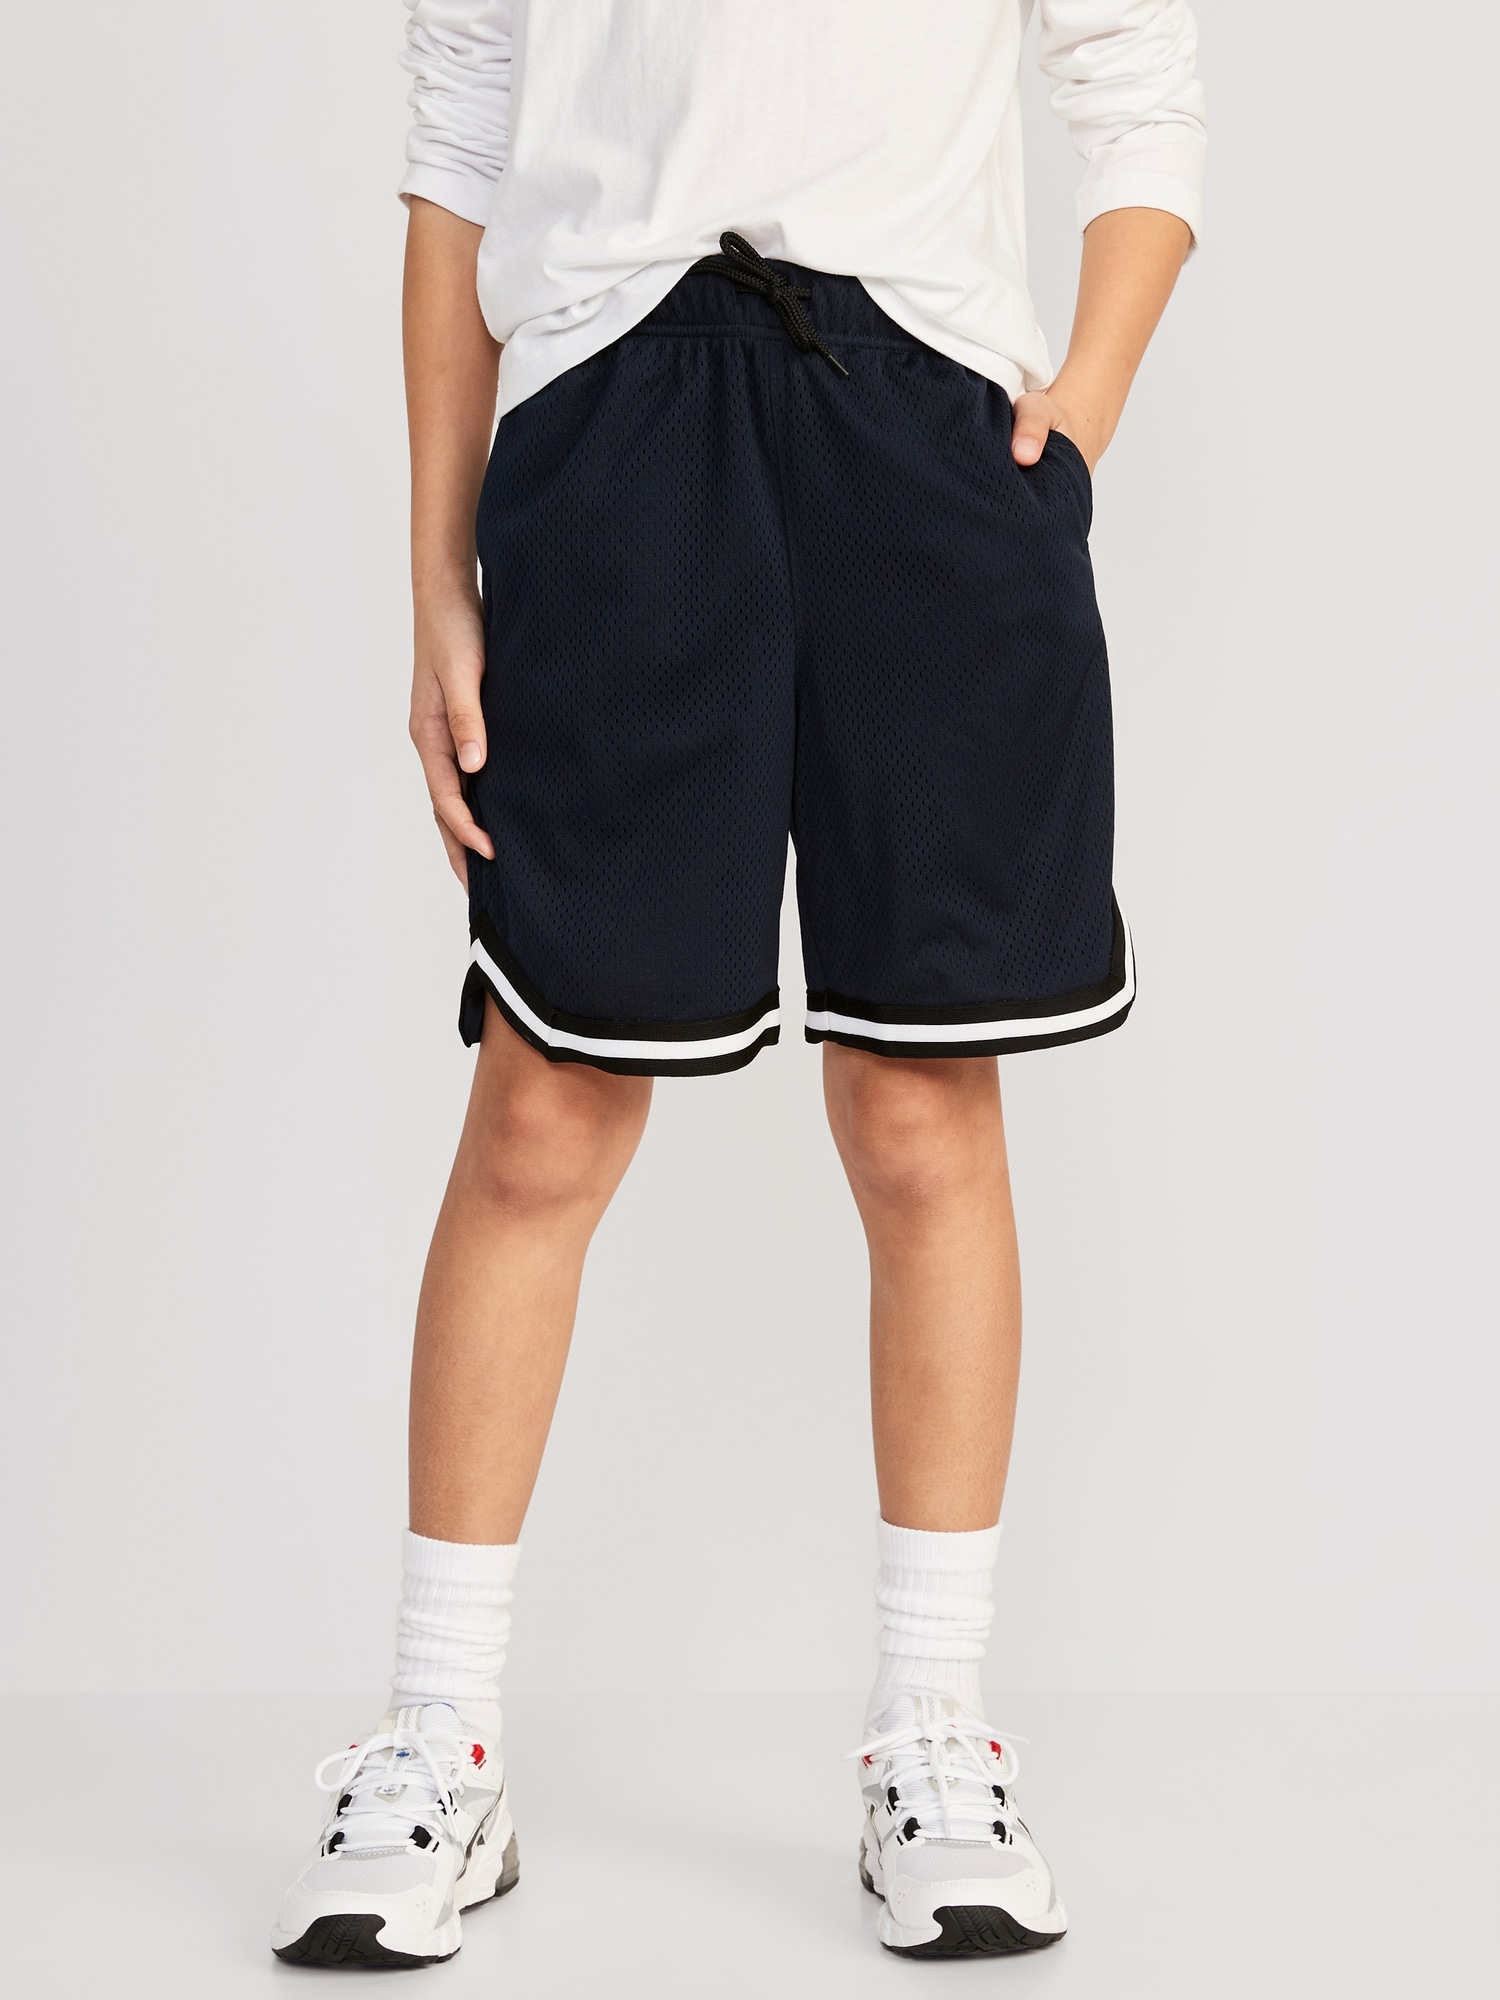 Mesh Basketball Shorts for Boys (At Knee)